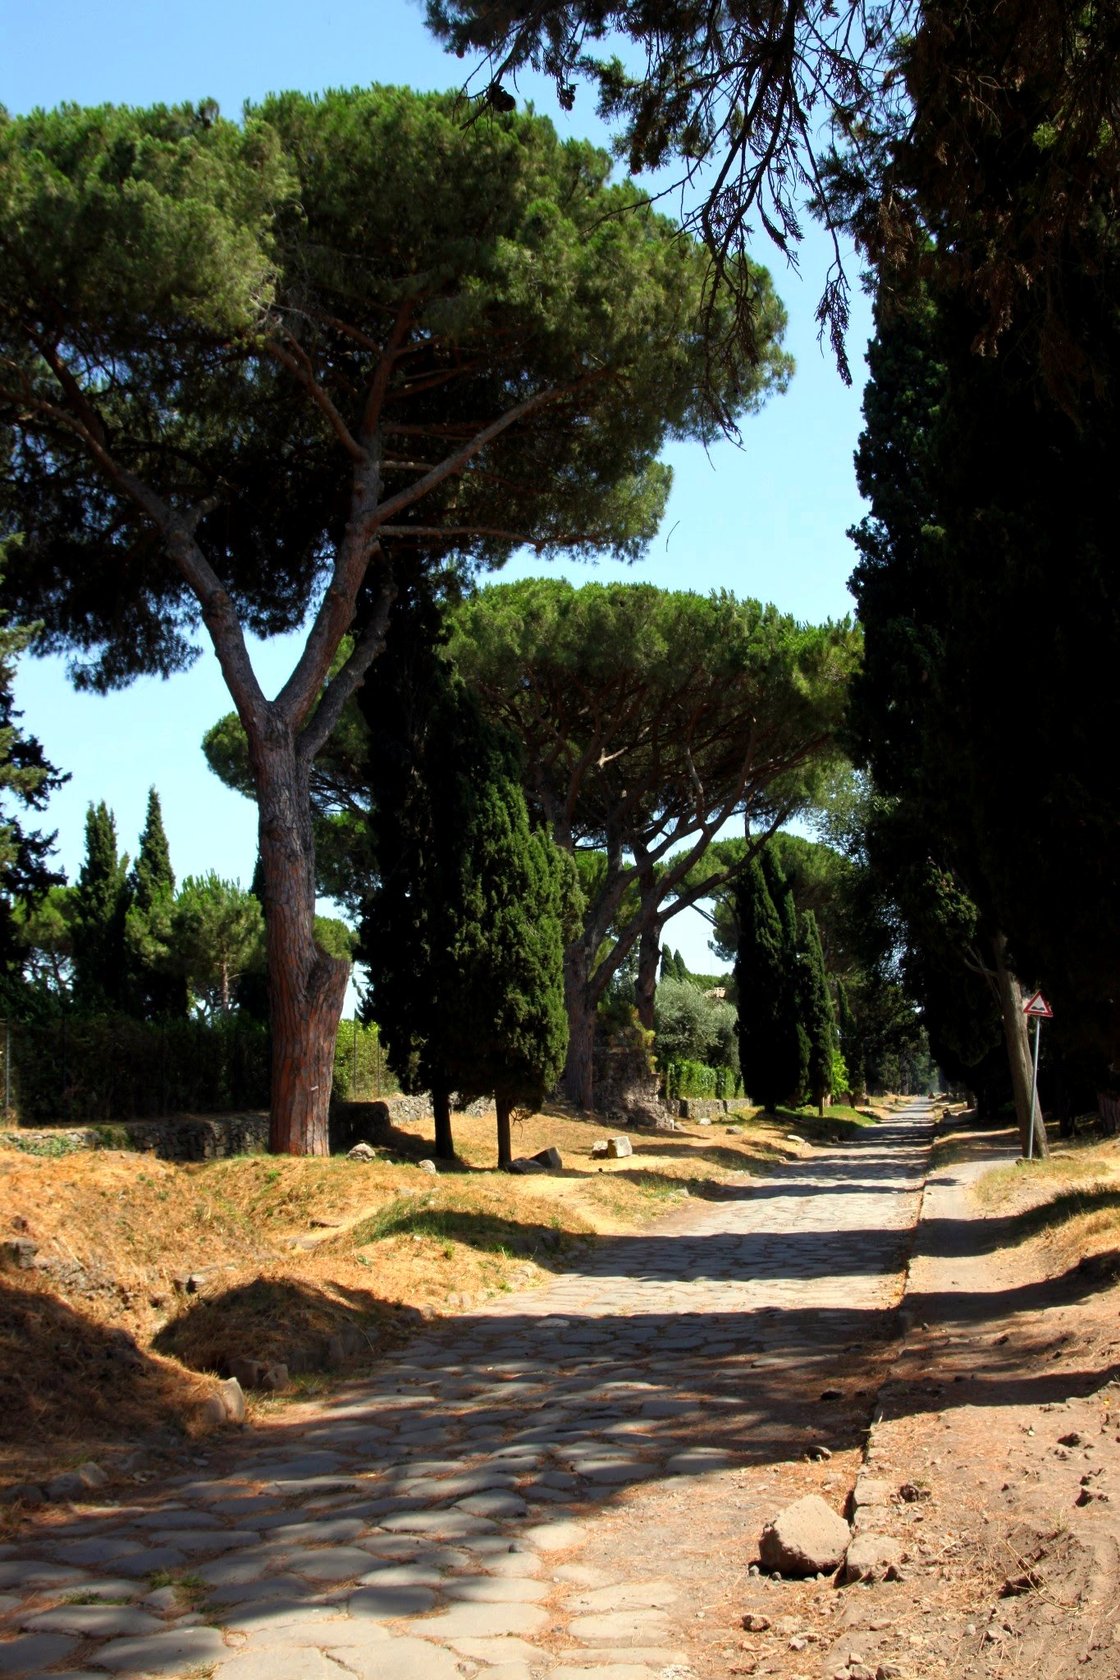 Cycling the Via Appia